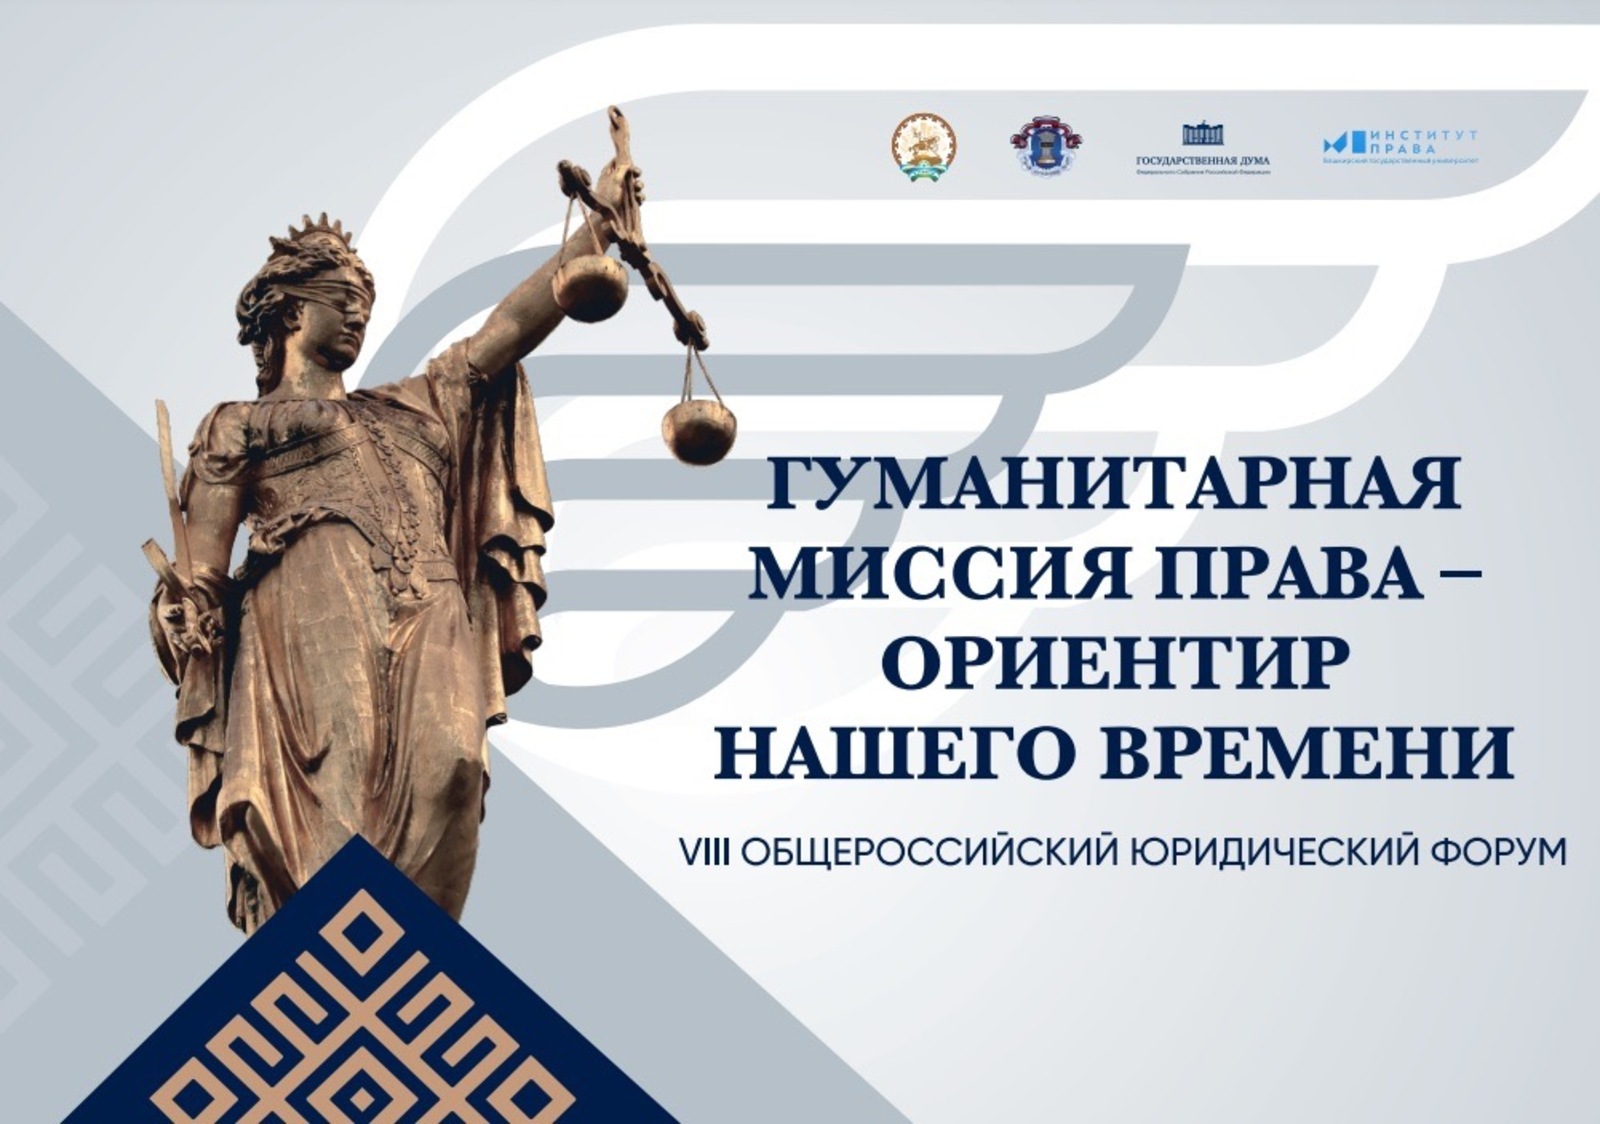 Уфа готовится принять ведущих юристов и политиков России на форуме Гуманитарная миссия права  ориентир нашего времени